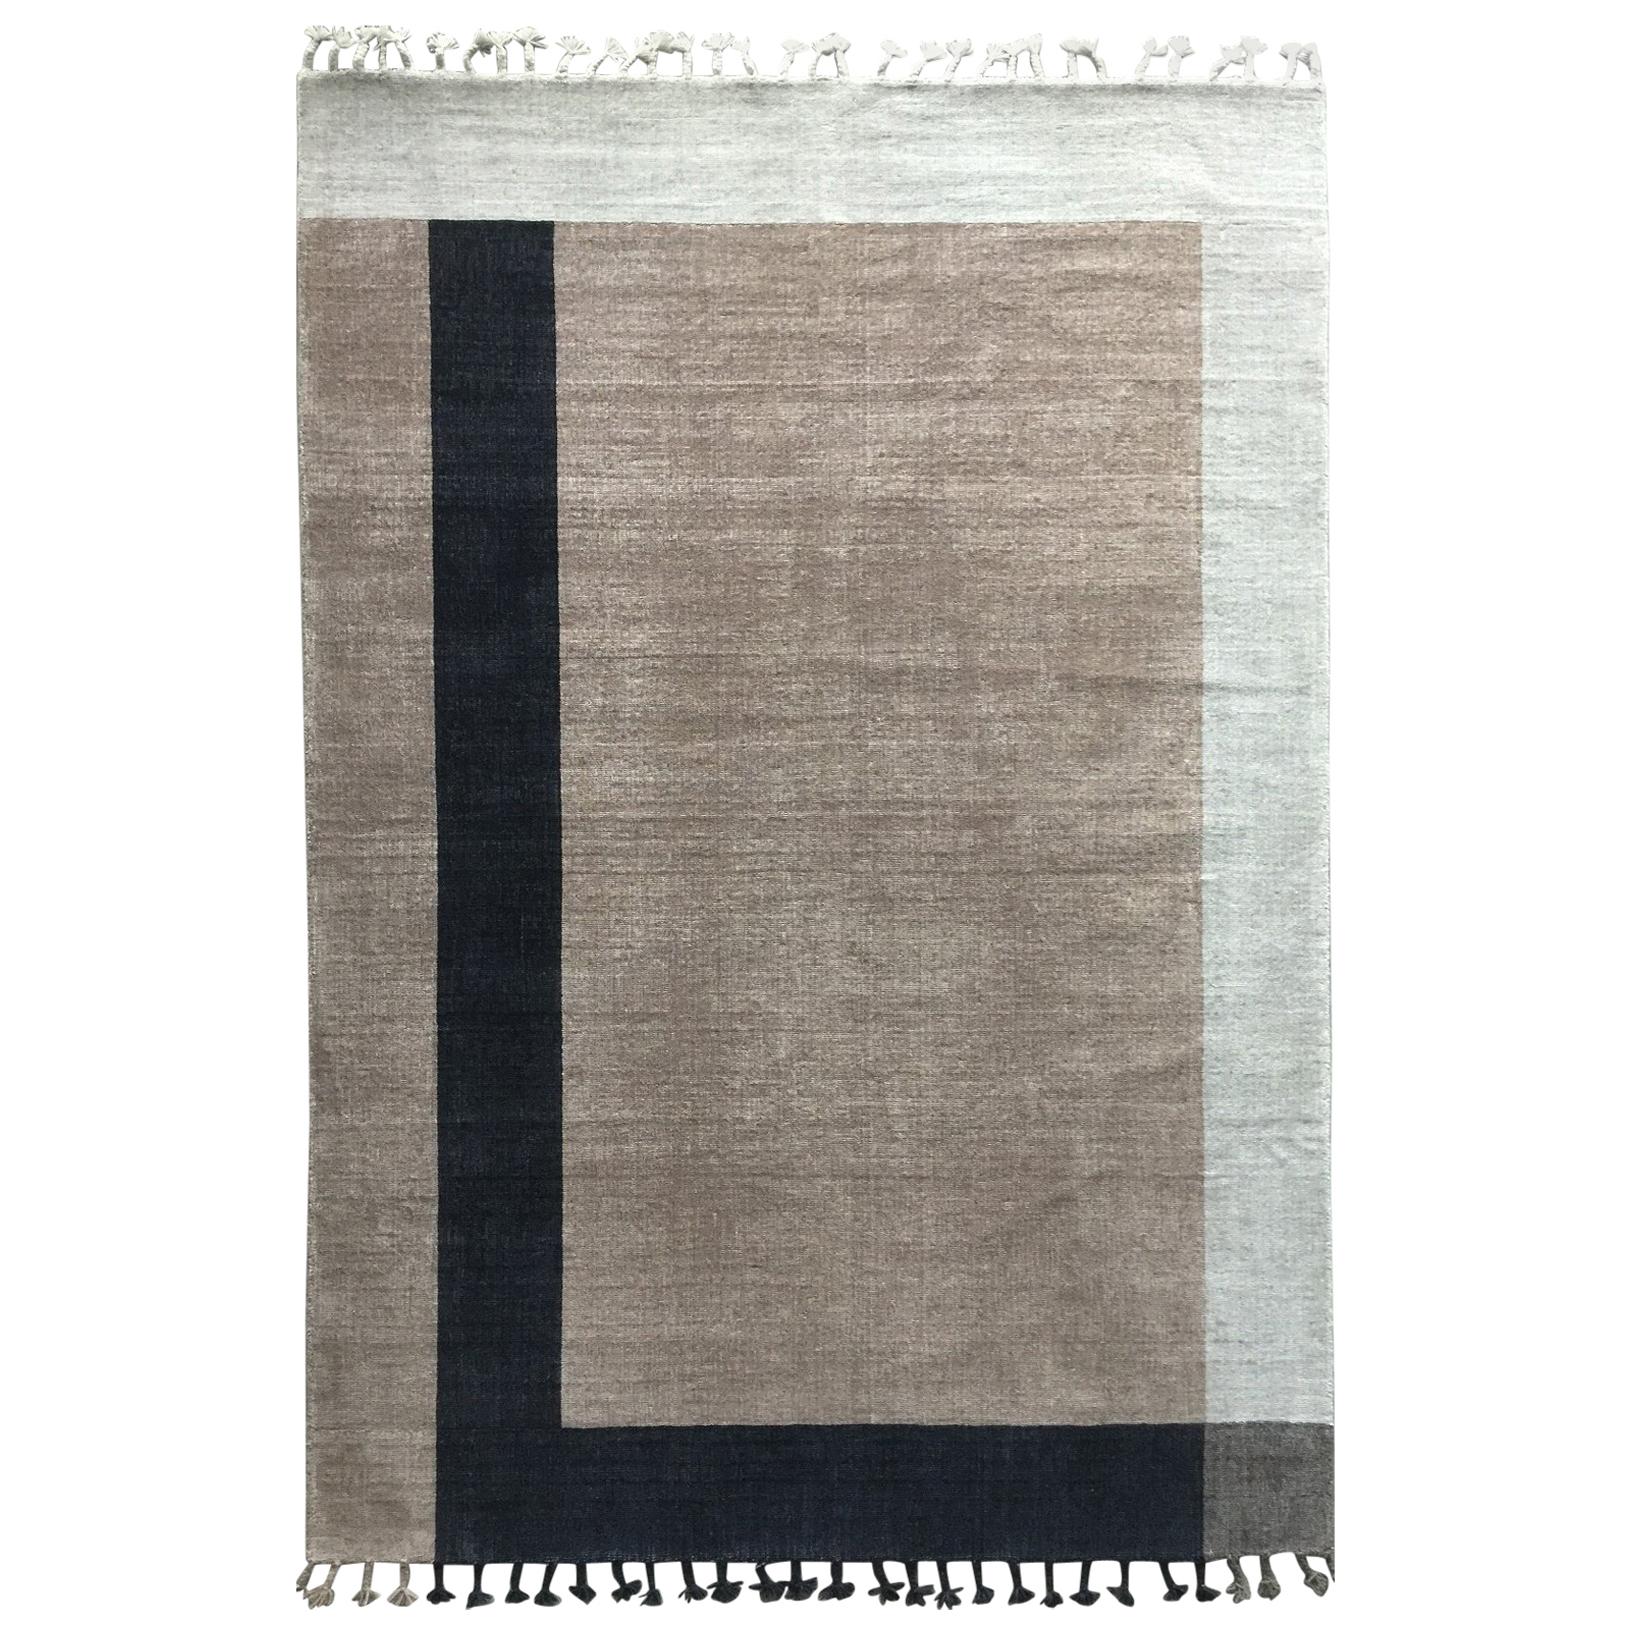 Rug Meadow -Carpet Geometric Brown Beige Black Neutral Flat Weave Wool Handmade